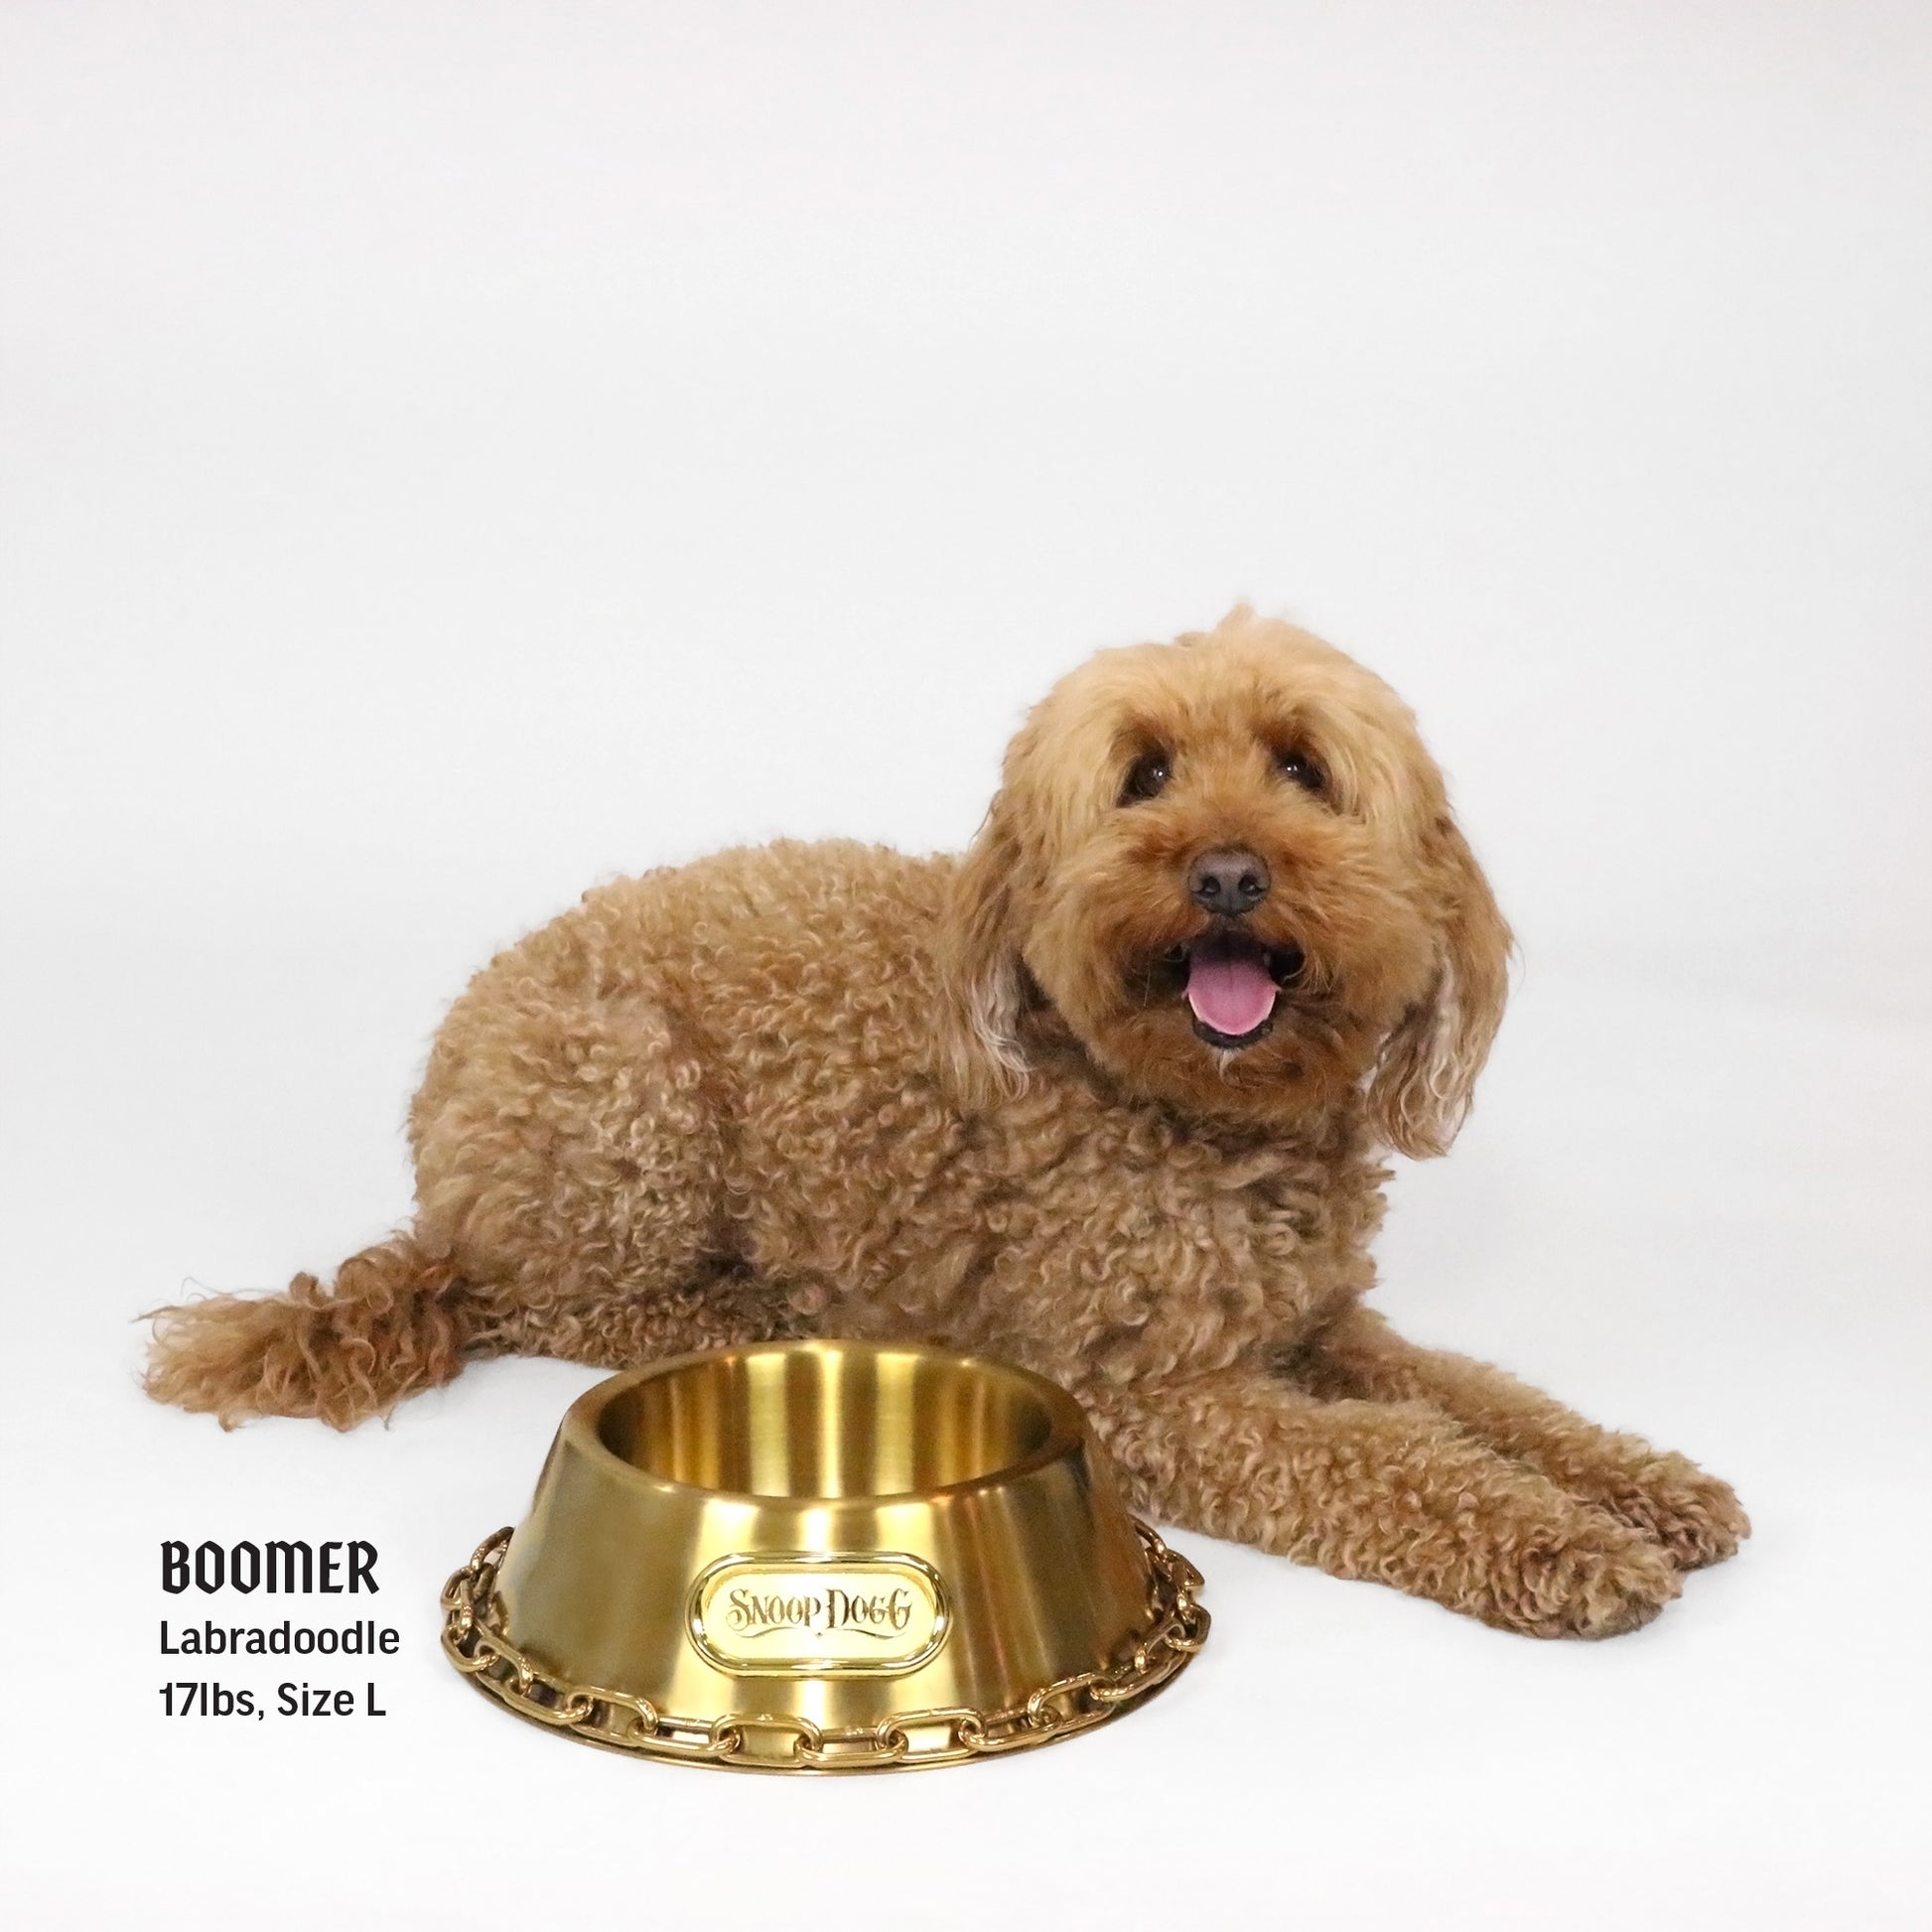 Dog bowl, large model